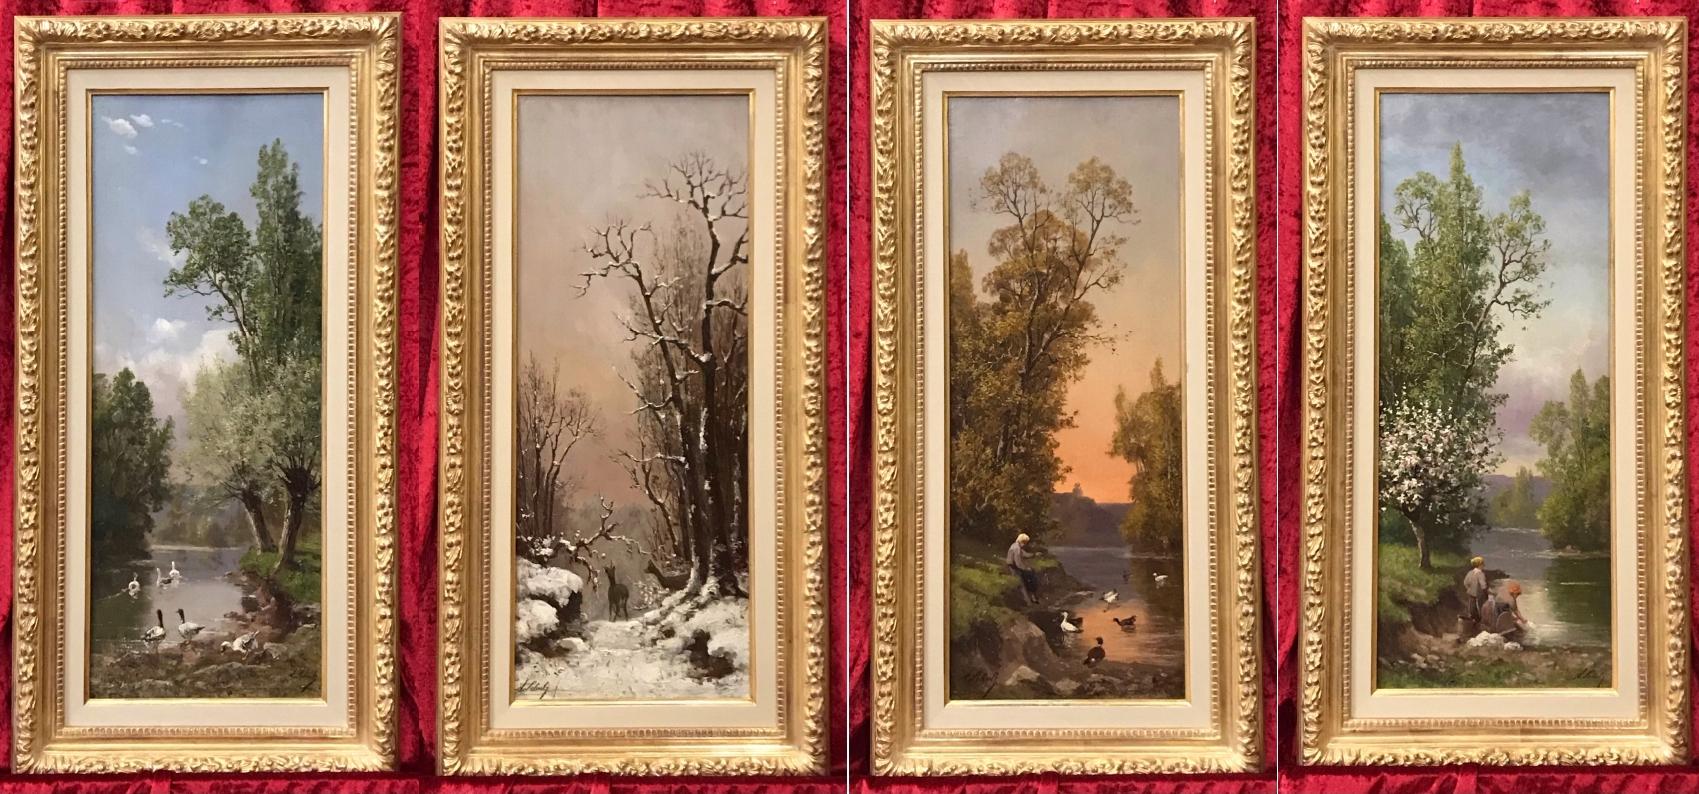 SCHULTZ Adrien Landscape Painting - The Four Seasons - Four Original Paintings 19th Century